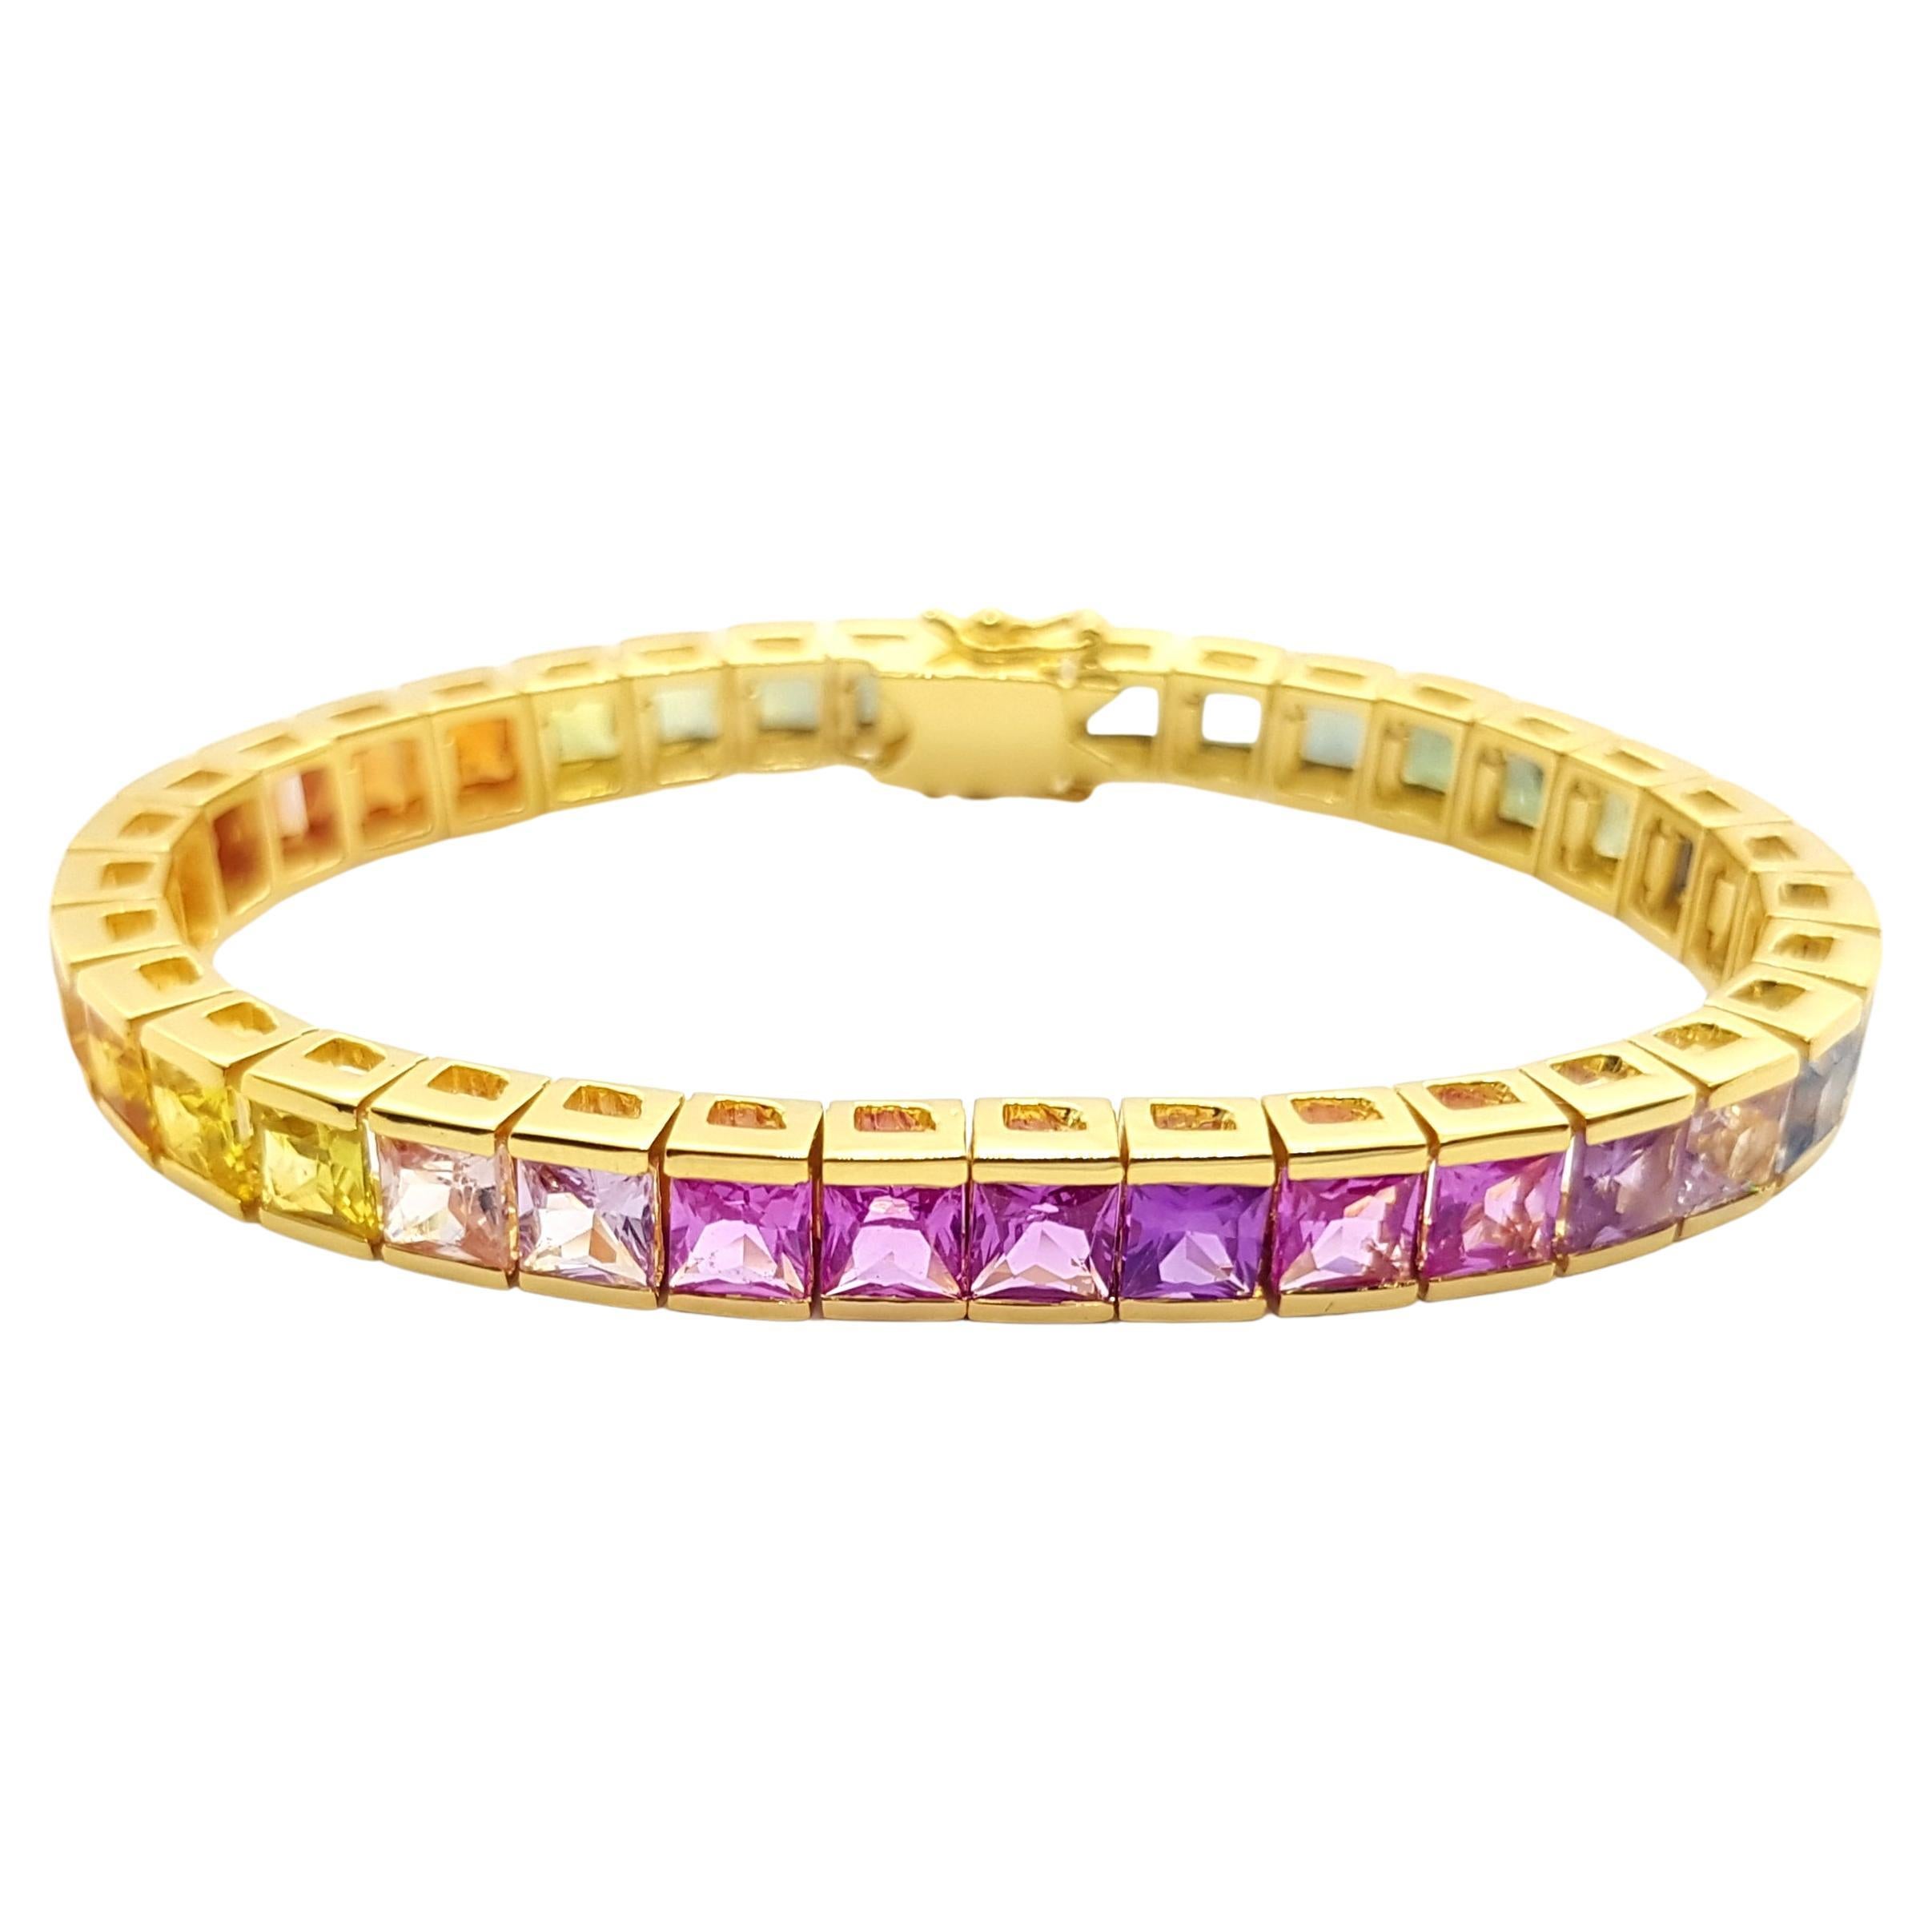 Bracelet tennis en or 18 carats serti de saphirs de couleur arc-en-ciel